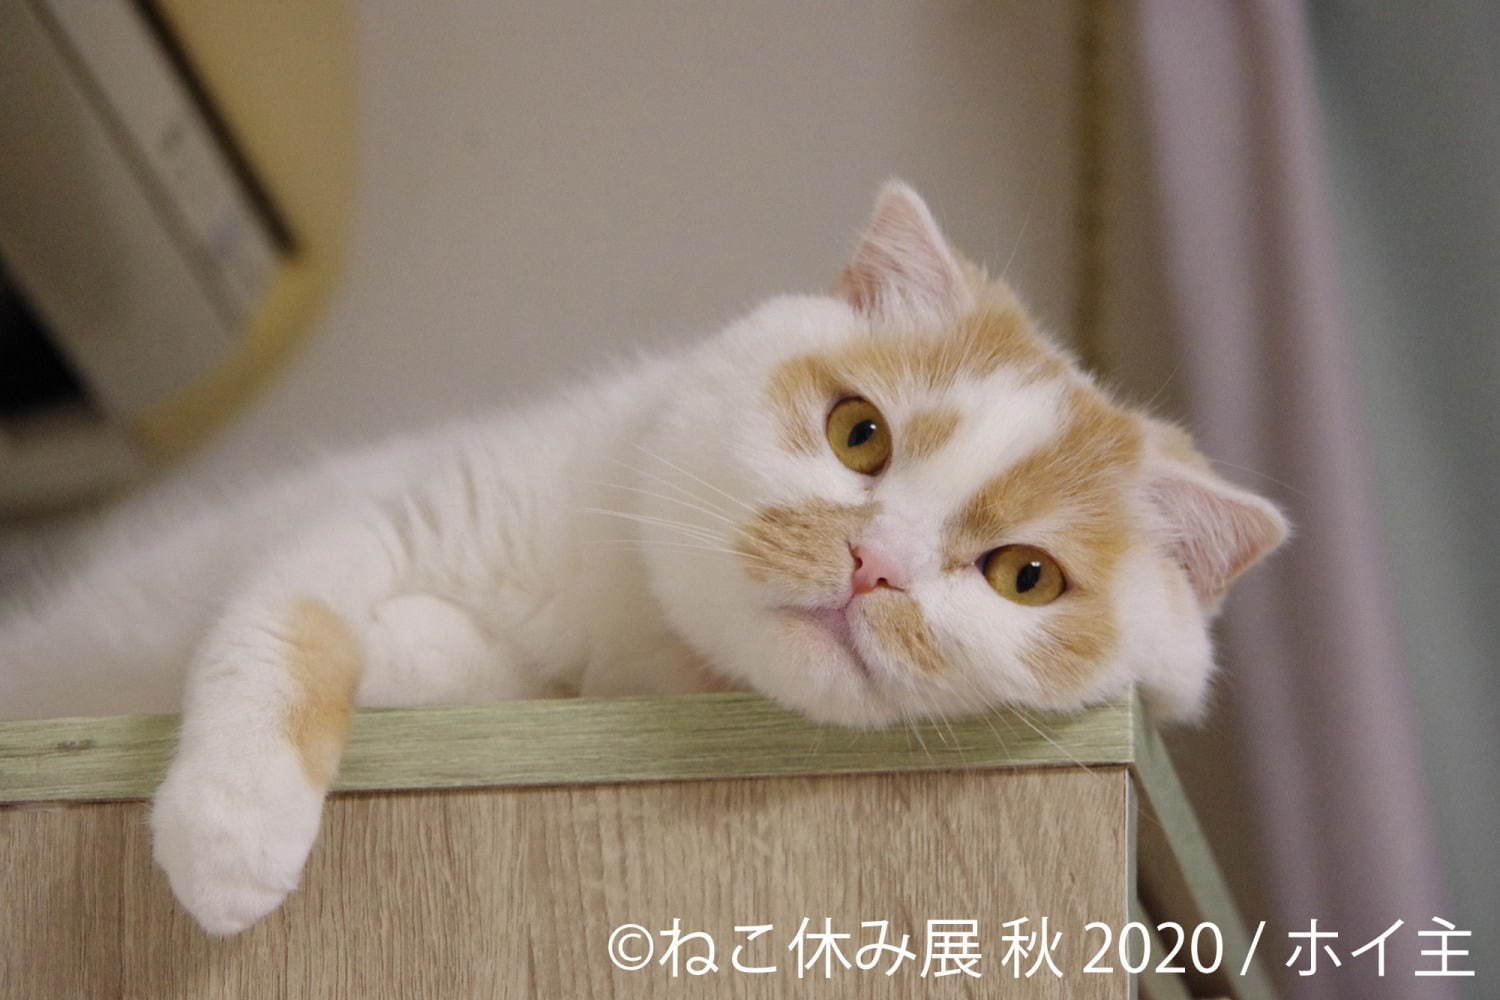 「ねこ休み展 秋 2020」名古屋で、新スター猫の写真展示＆猫アクセサリーの販売など｜写真9